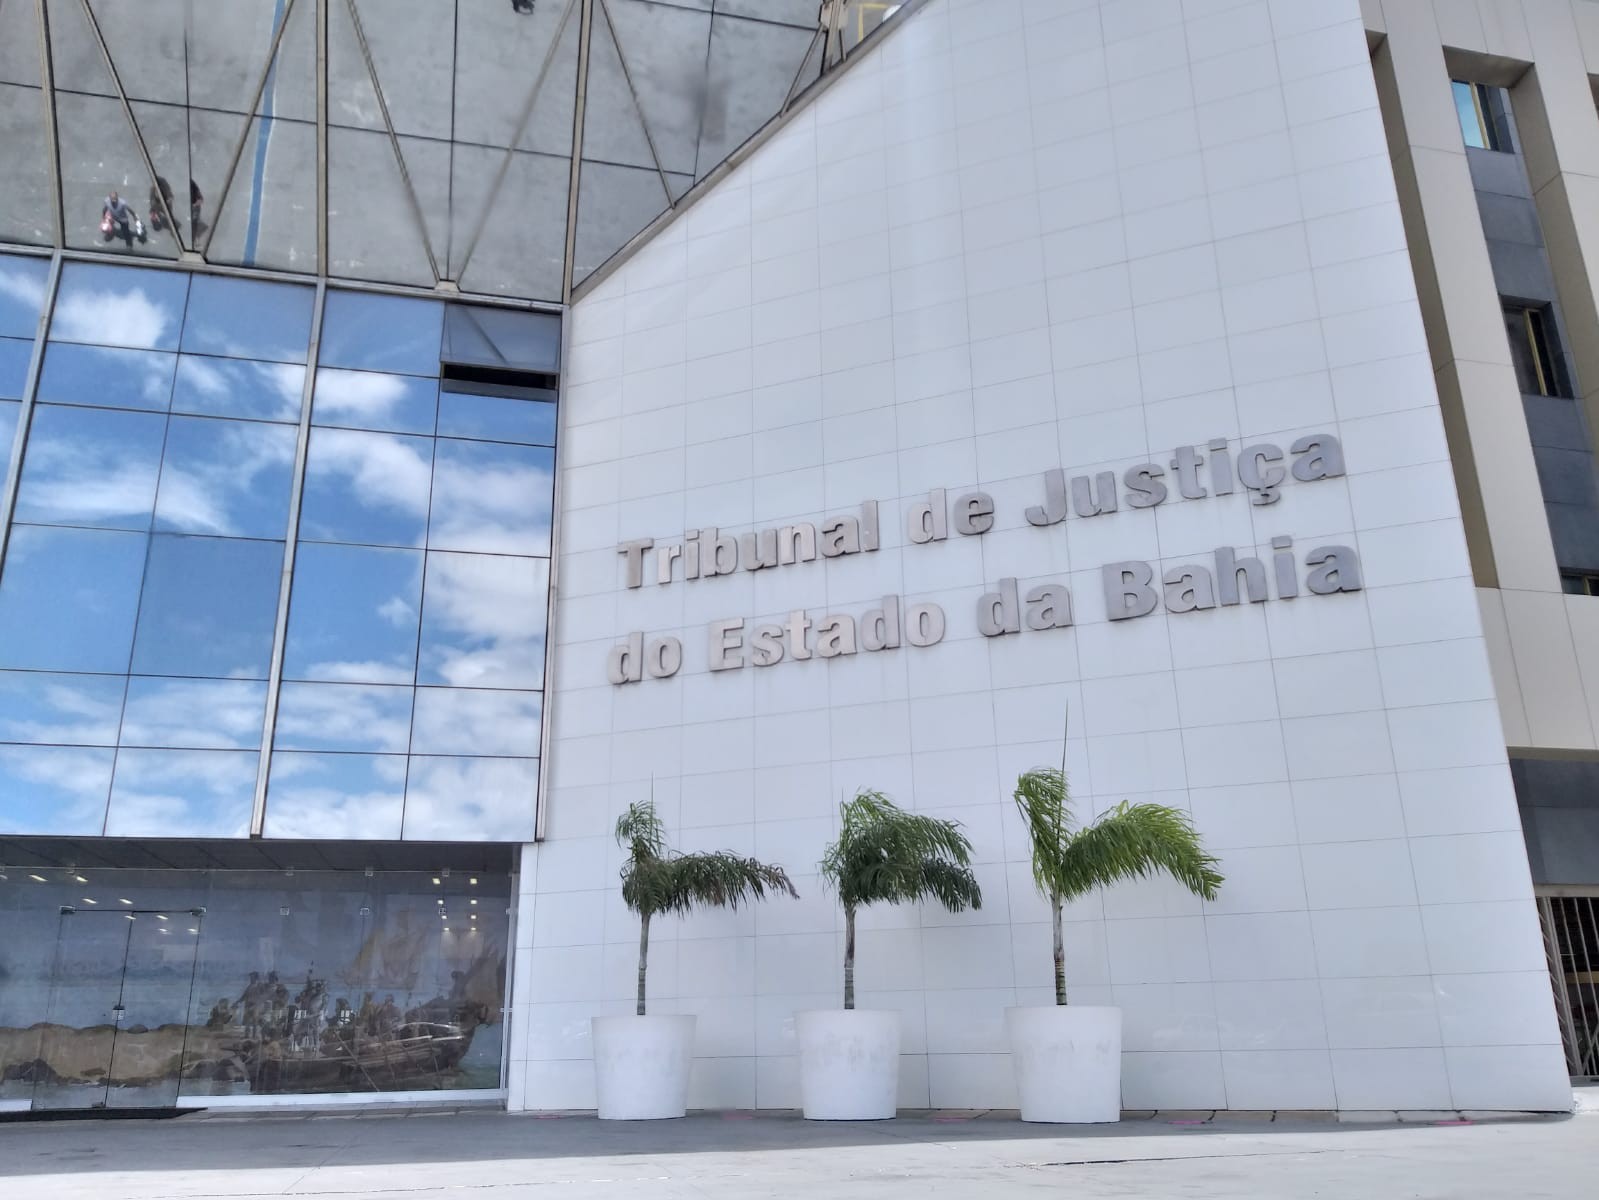 Tribunal de Justiça da Bahia promove mutirão para emissão gratuita de registro civil 